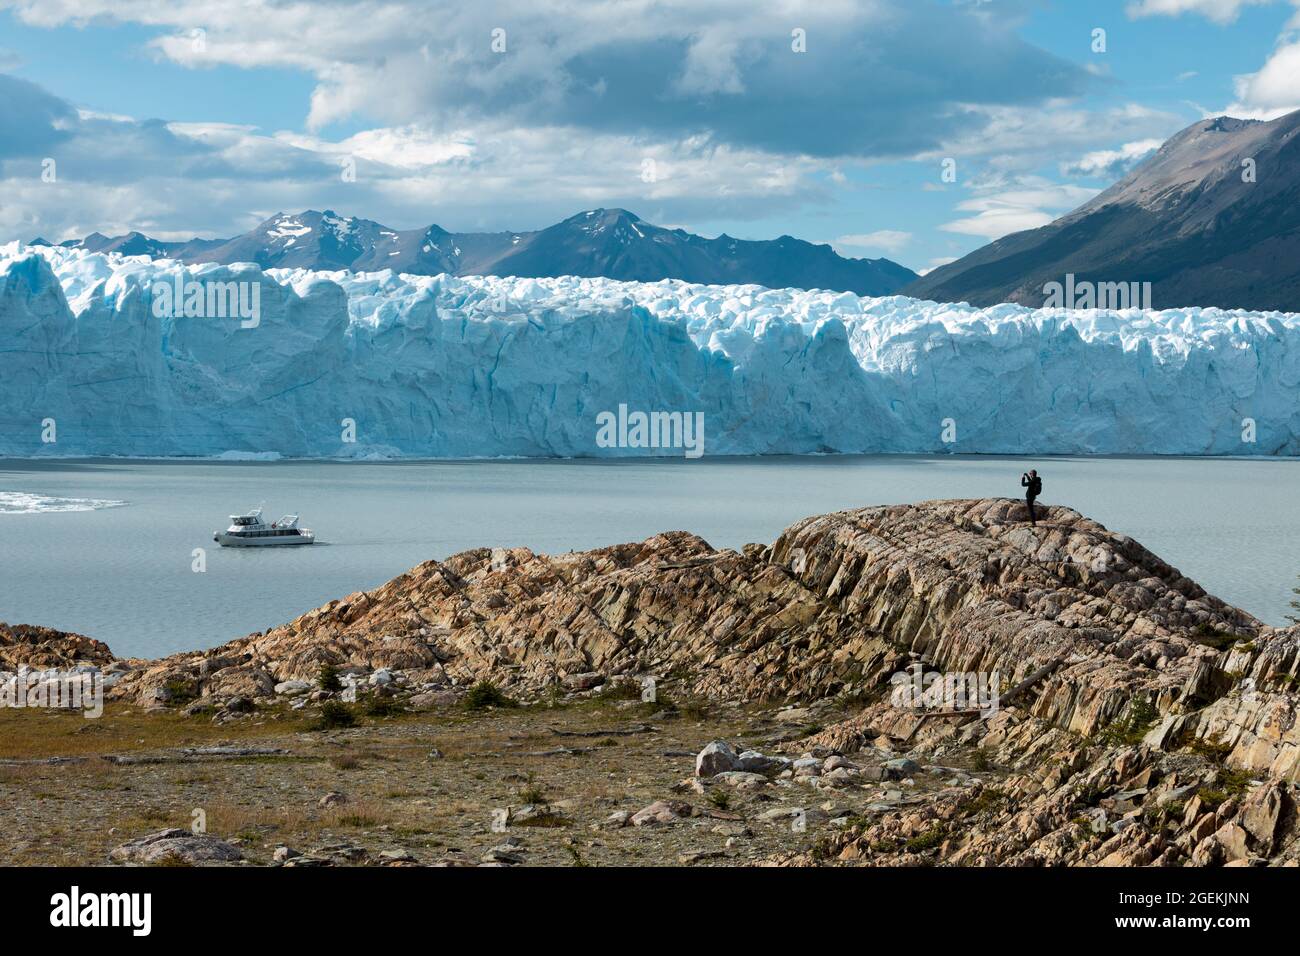 A man on the rock, Perito Moreno Glacier Stock Photo